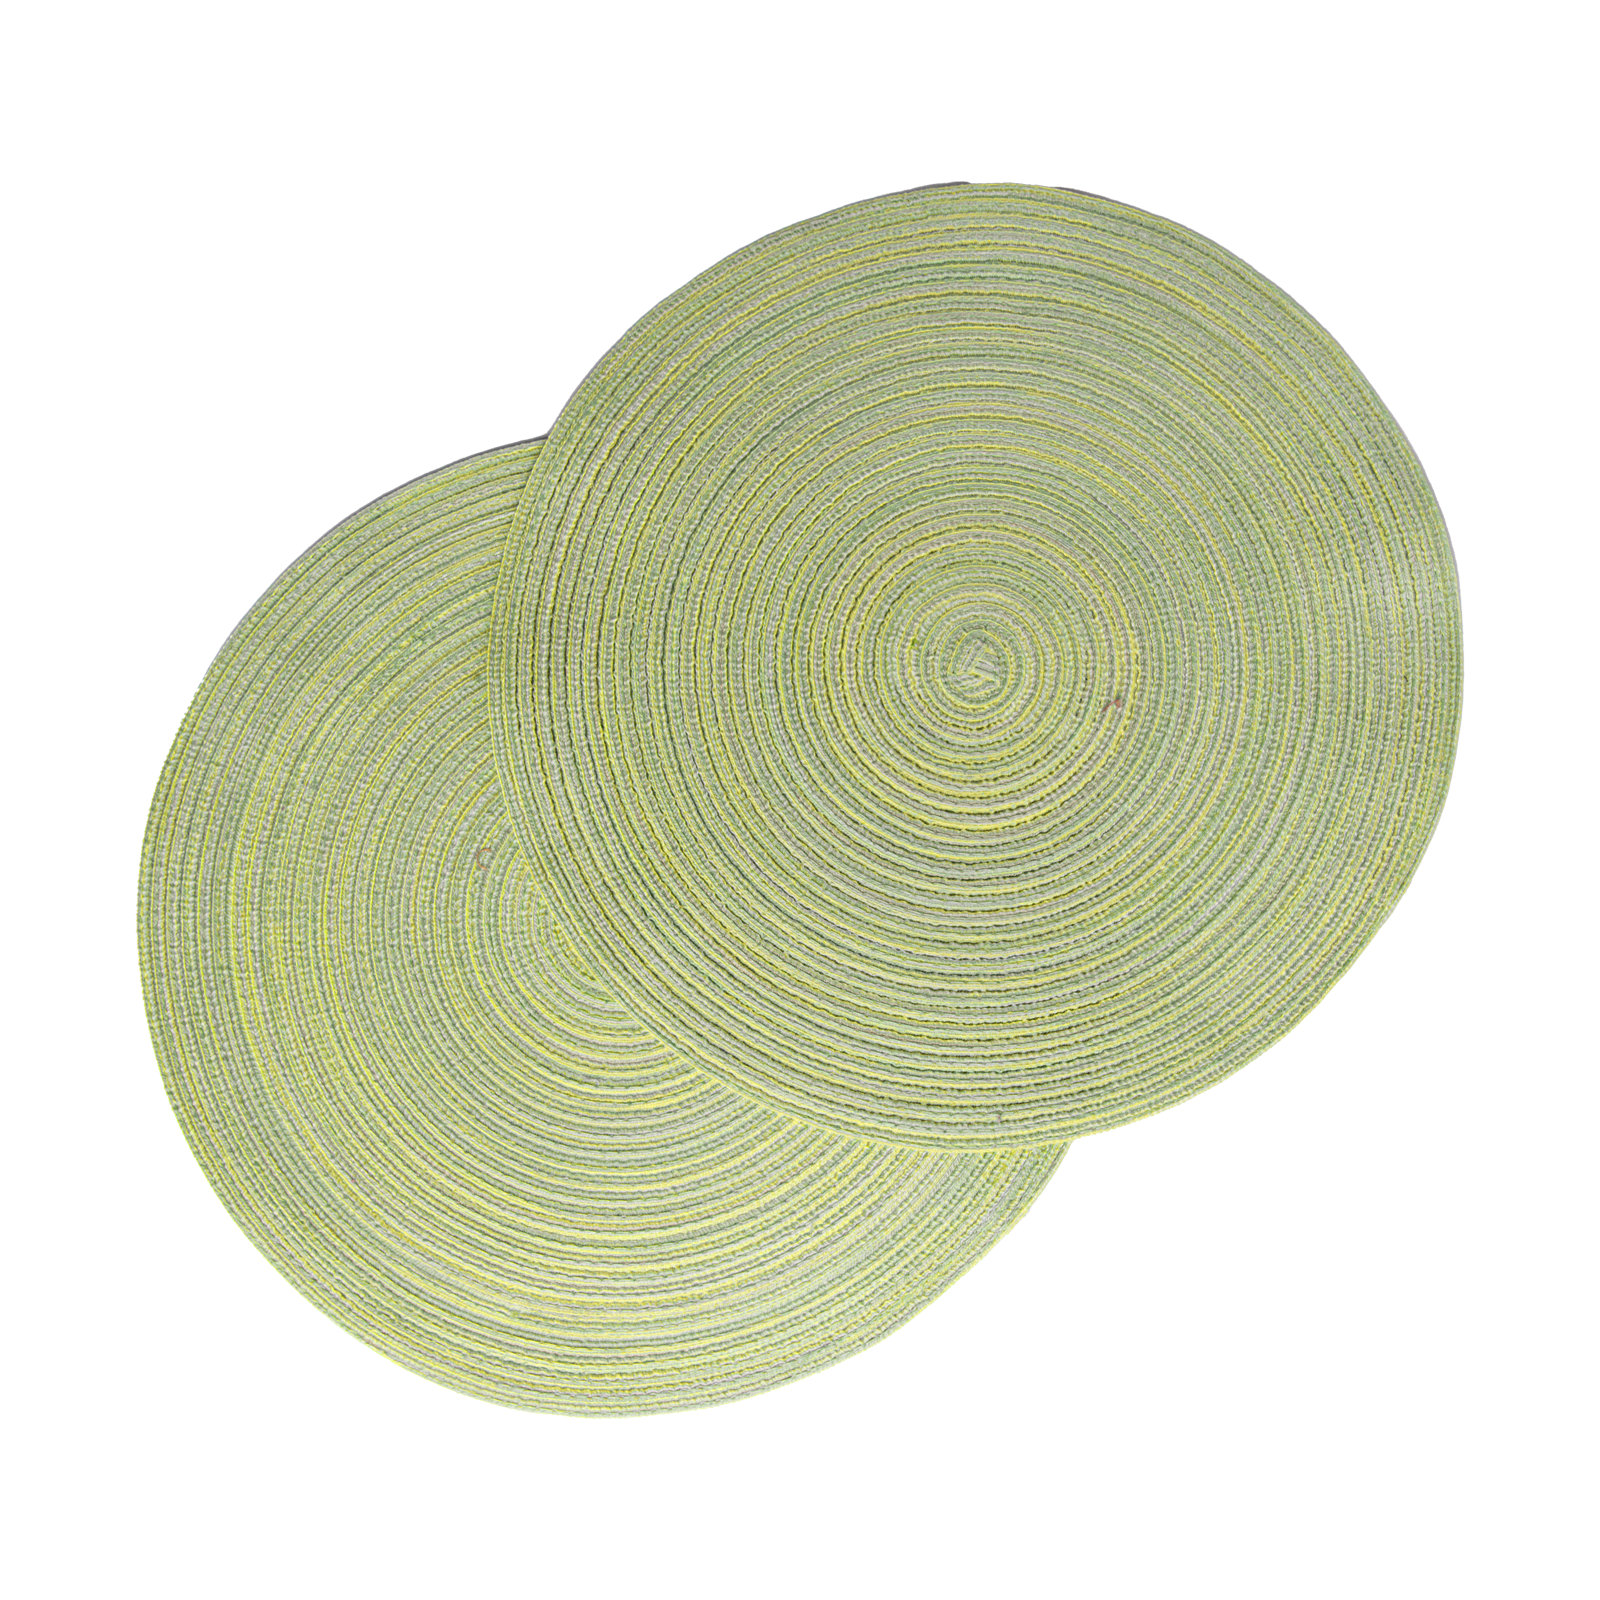 Größe: Ø38 cm Farbe: limone #farbe_limone